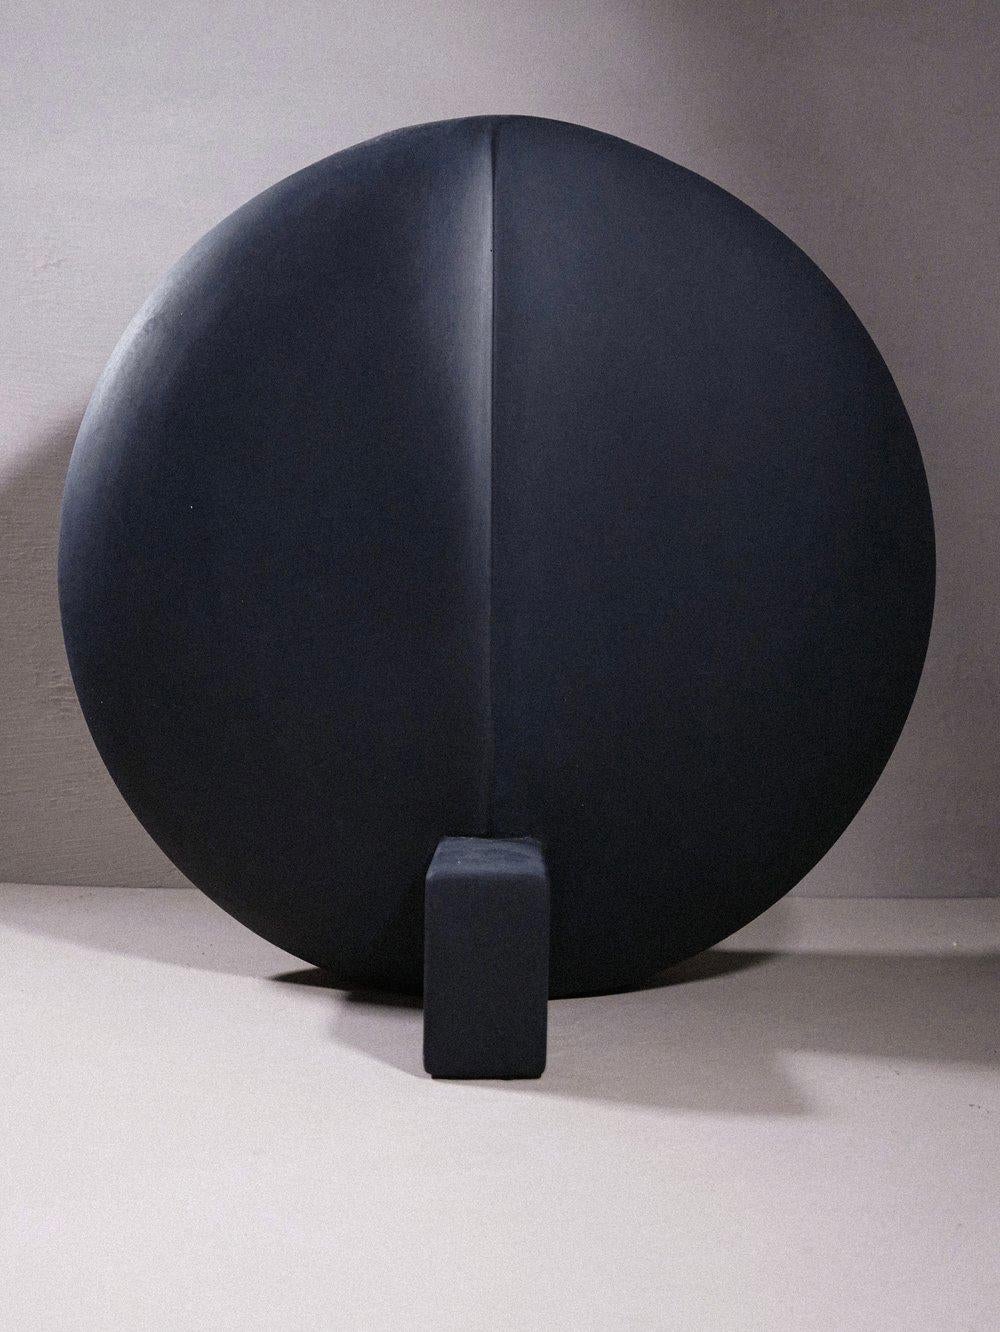 Die Guggenheim Vase ist eine wunderschöne, schwarze, architektonische Vase, die von 101 Copenhagen entworfen und in Dänemark handgefertigt wurde.

Aufgrund der handgefertigten, matten Oberfläche ist diese Vase nicht zur Aufnahme von Wasser geeignet.